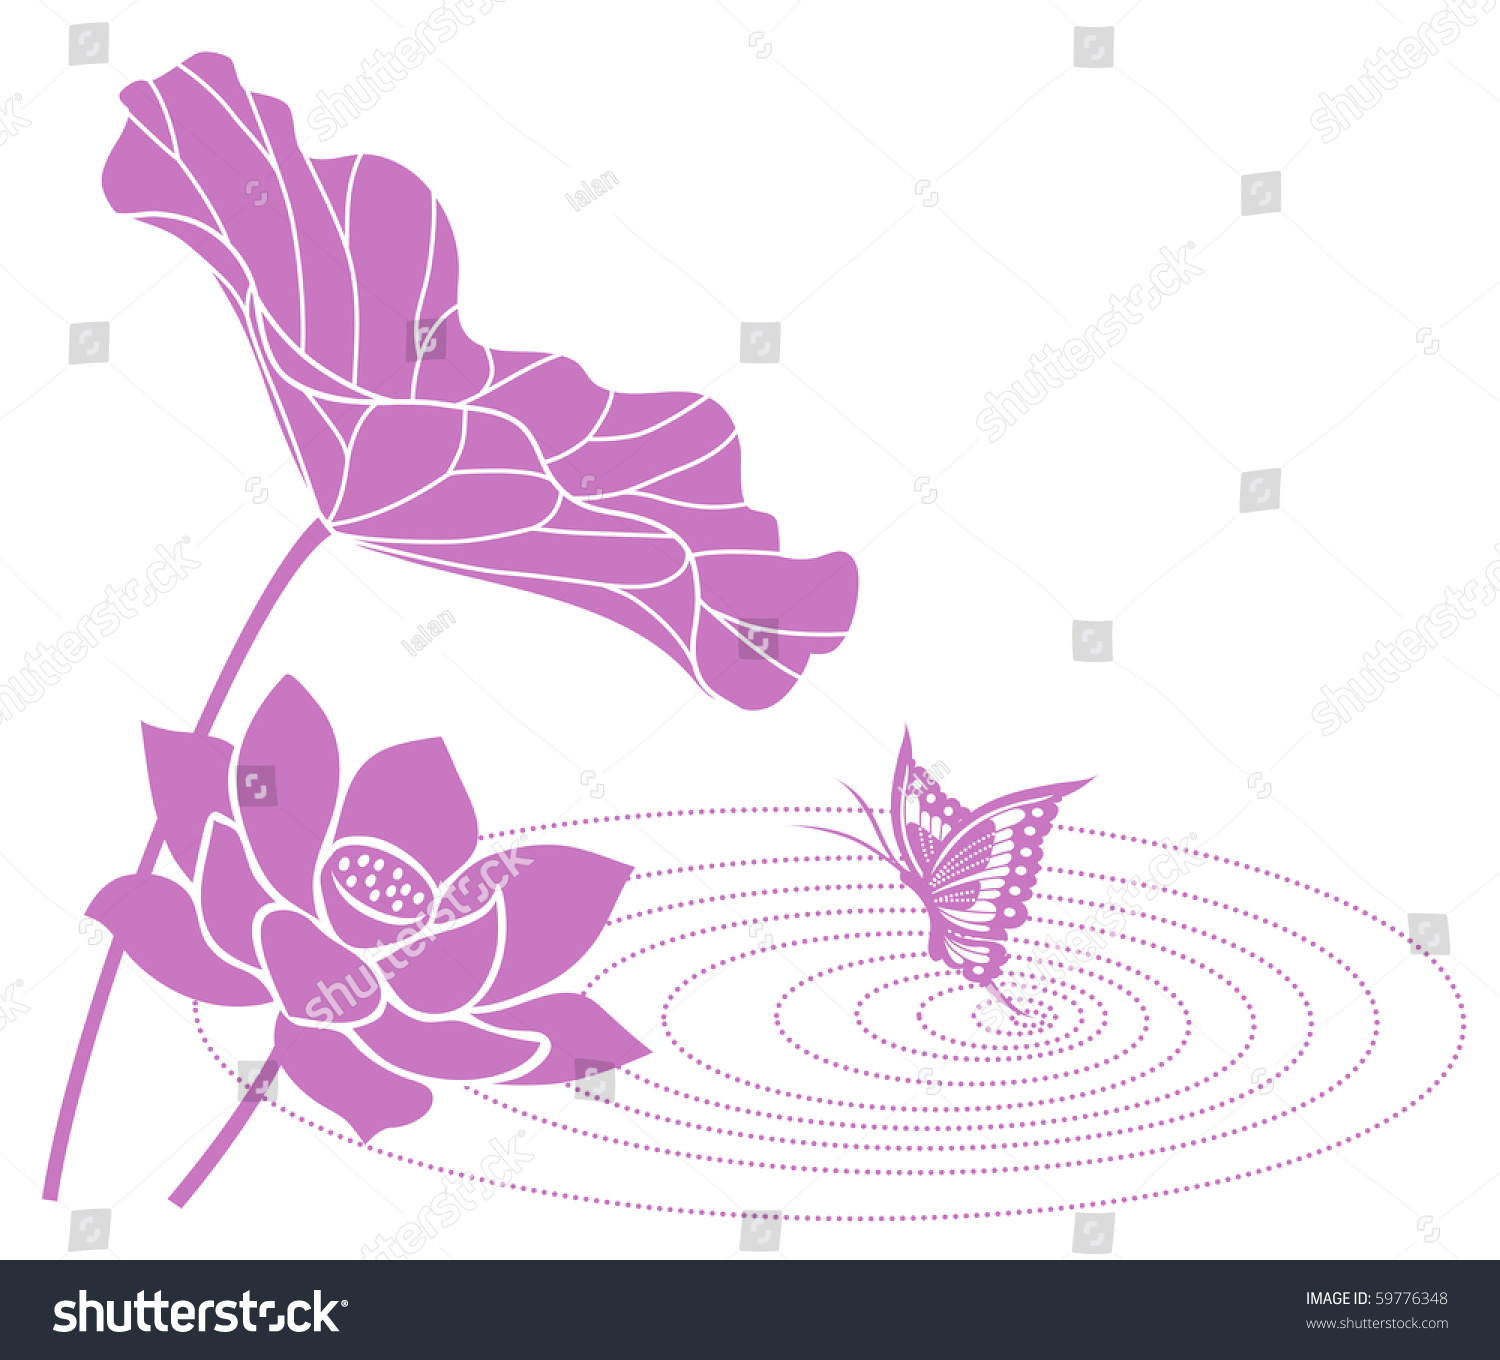 Lotus Flower Stock Vector Illustration 59776348 : Shutterstock